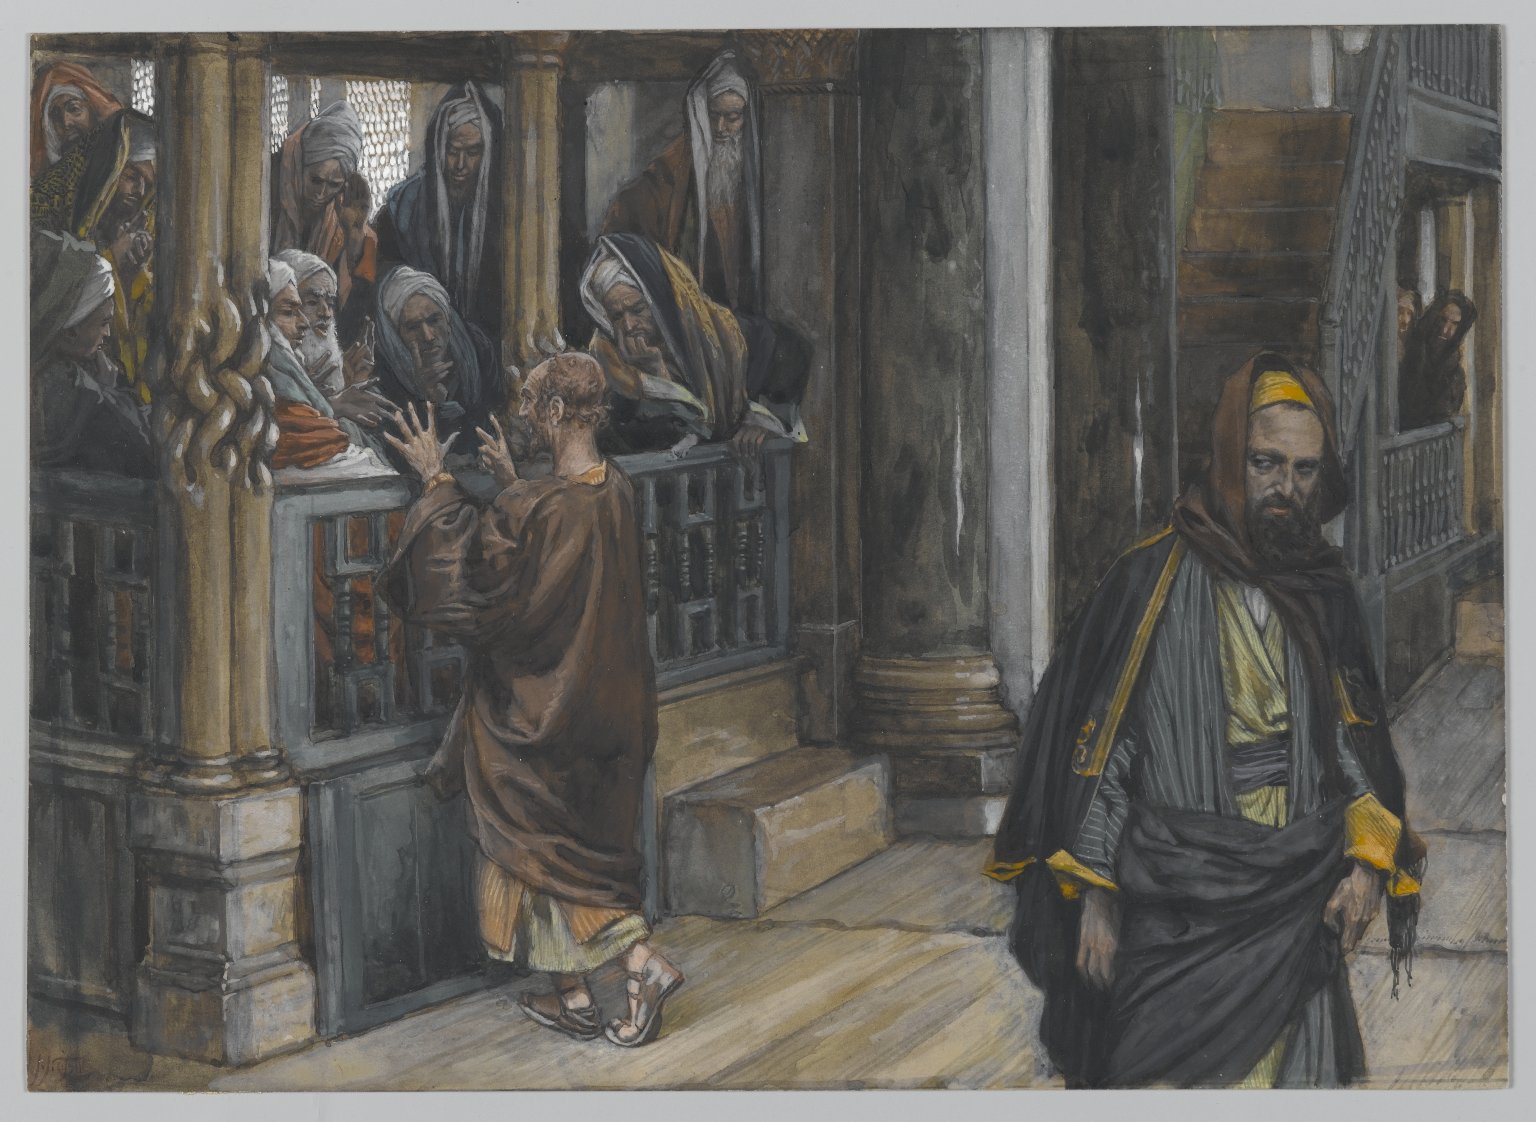 216. Иуда отправляется на поиски евреев, 1886-94, 18.3 x 25.4 cm, Бумага, акварель по графиту